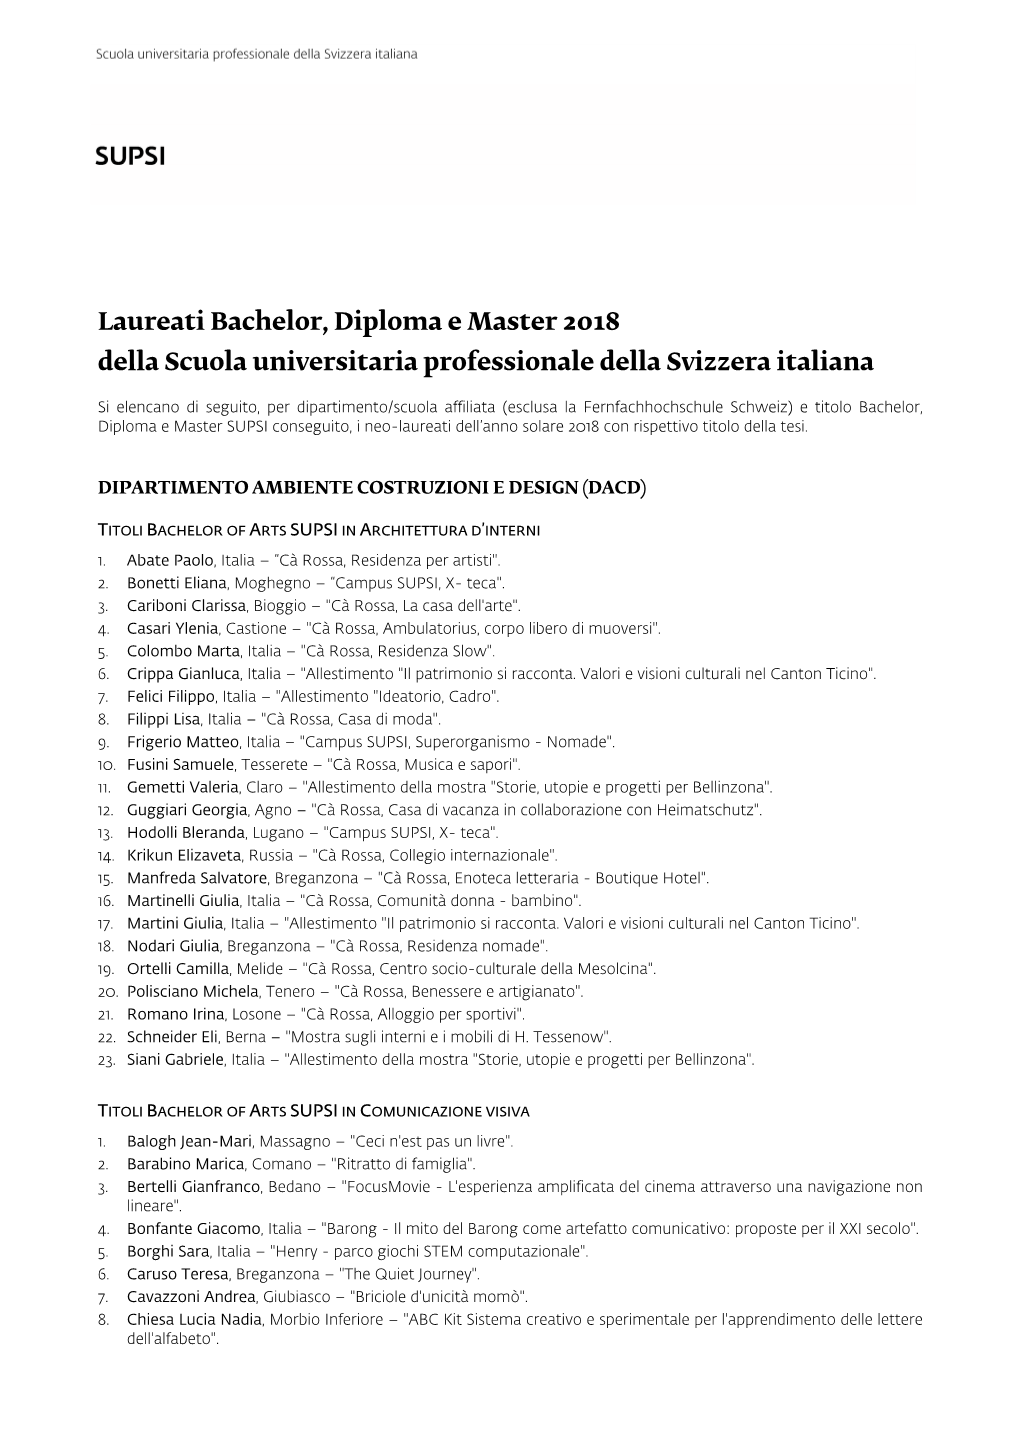 Laureati Bachelor, Diploma E Master 2018 Della Scuola Universitaria Professionale Della Svizzera Italiana